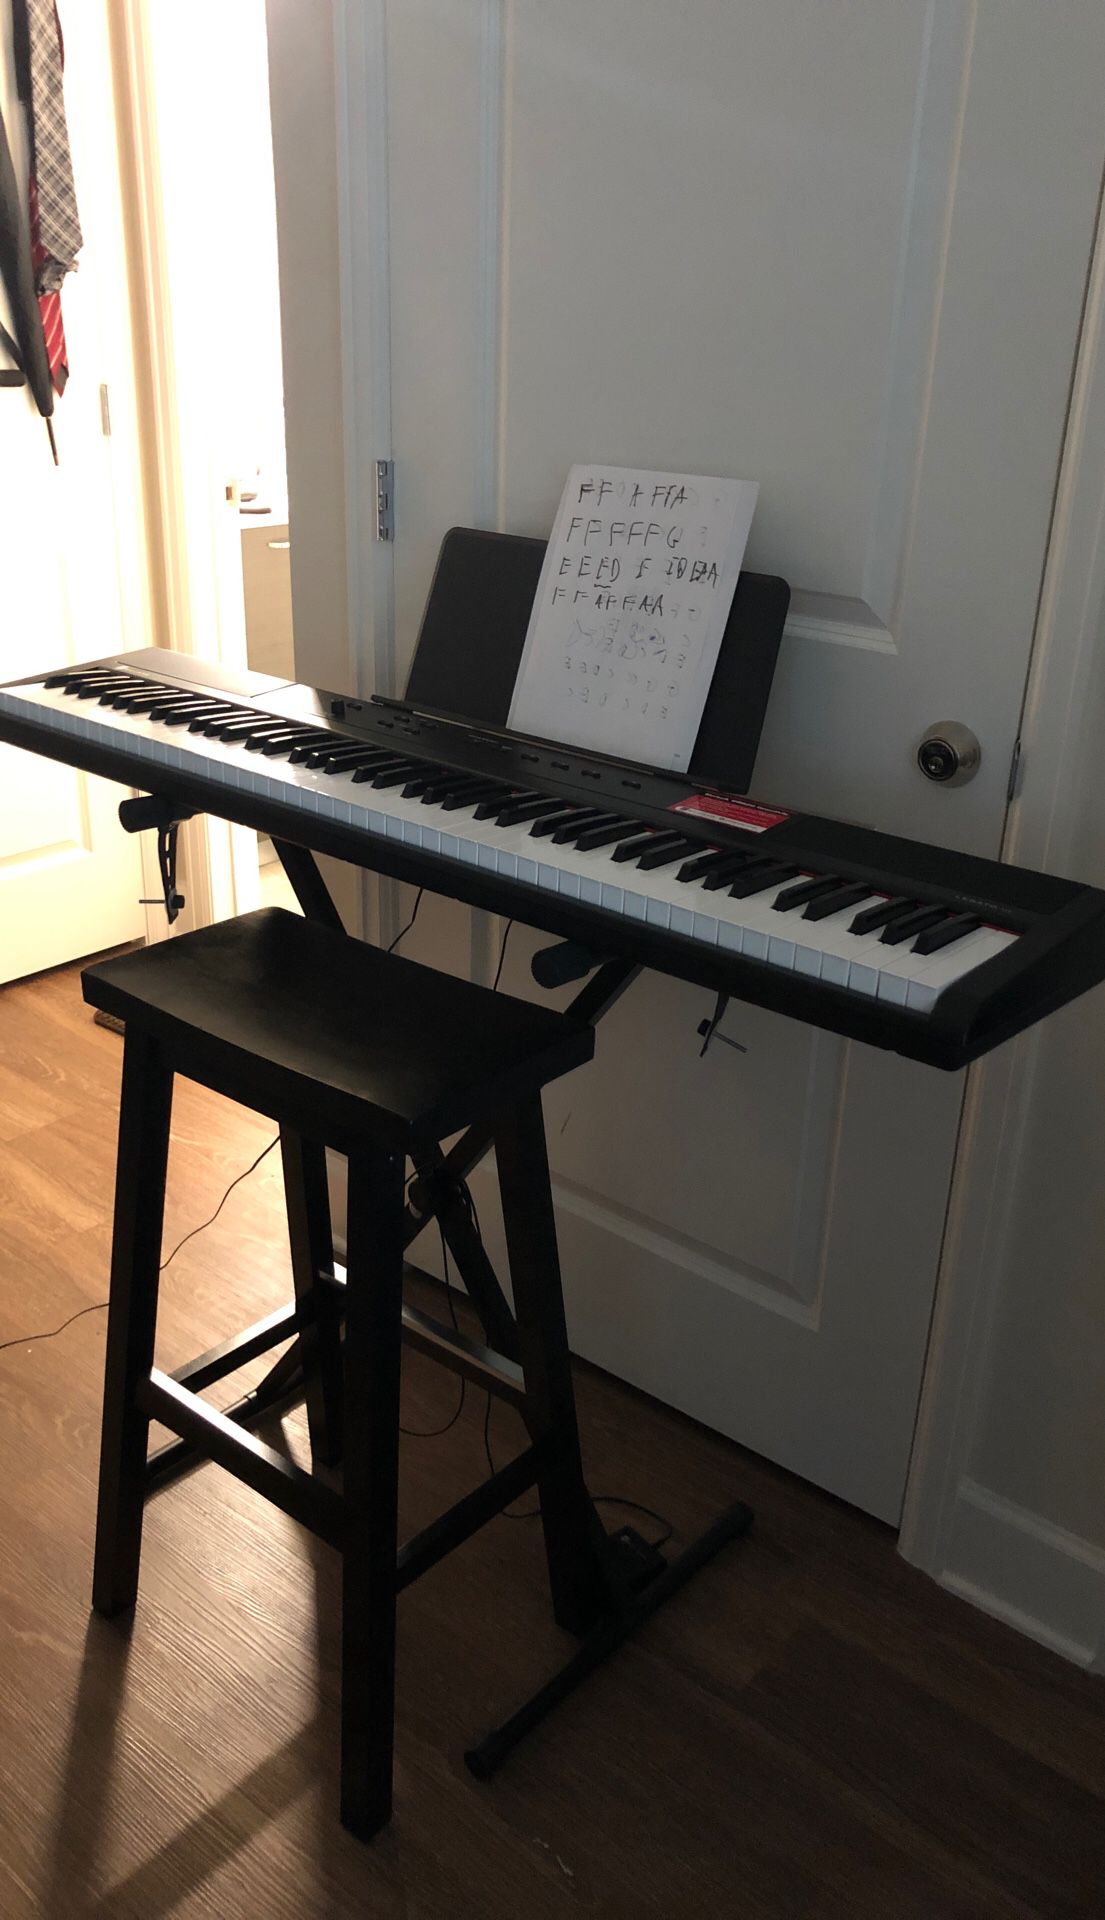 Williams Legato III piano keyboard 88 keys